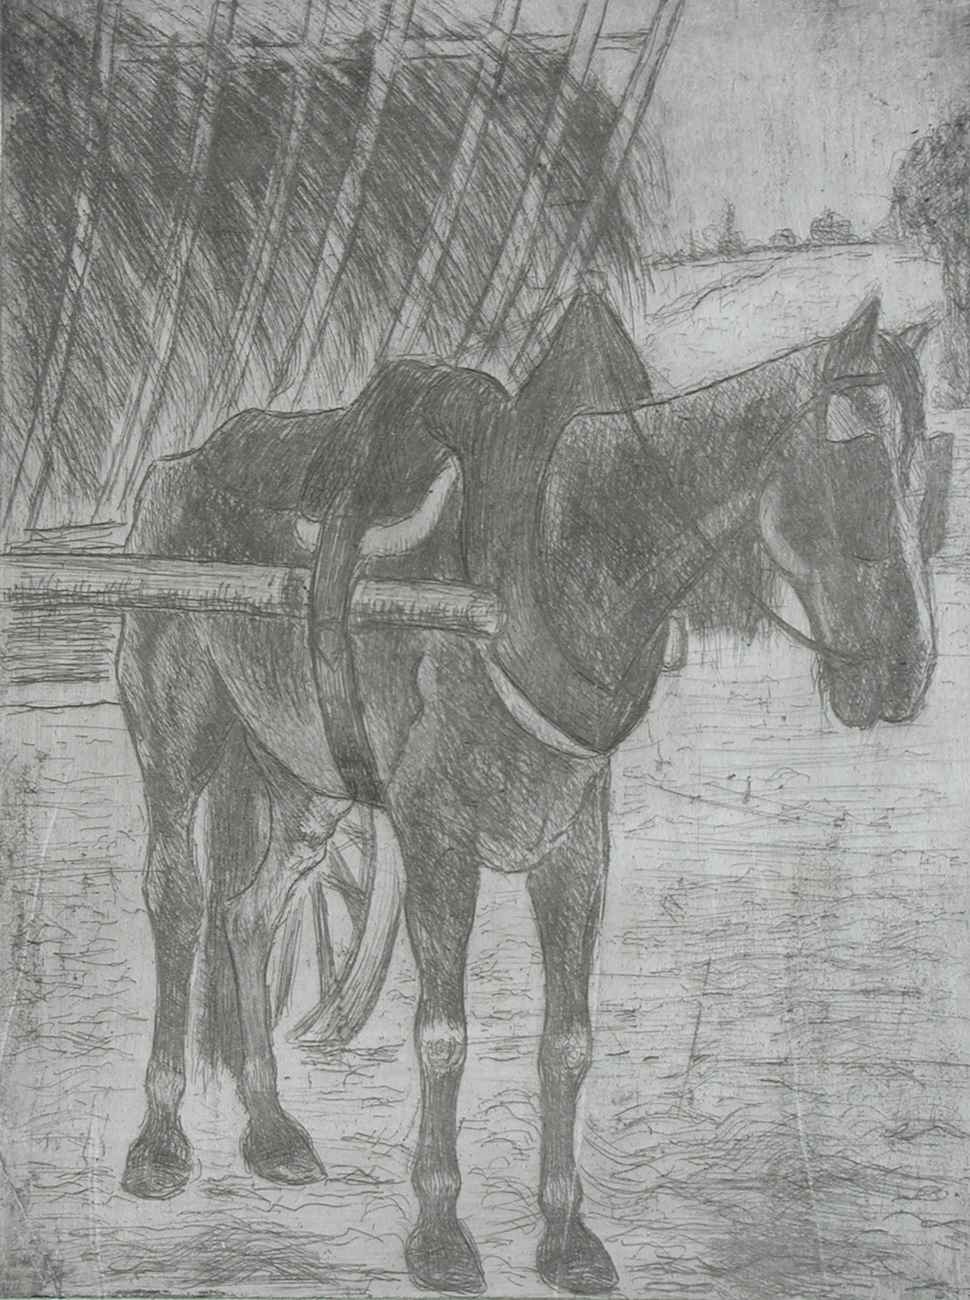 Horse Pulling Hay Cart - Félix Pissarro (1874 - 1897)